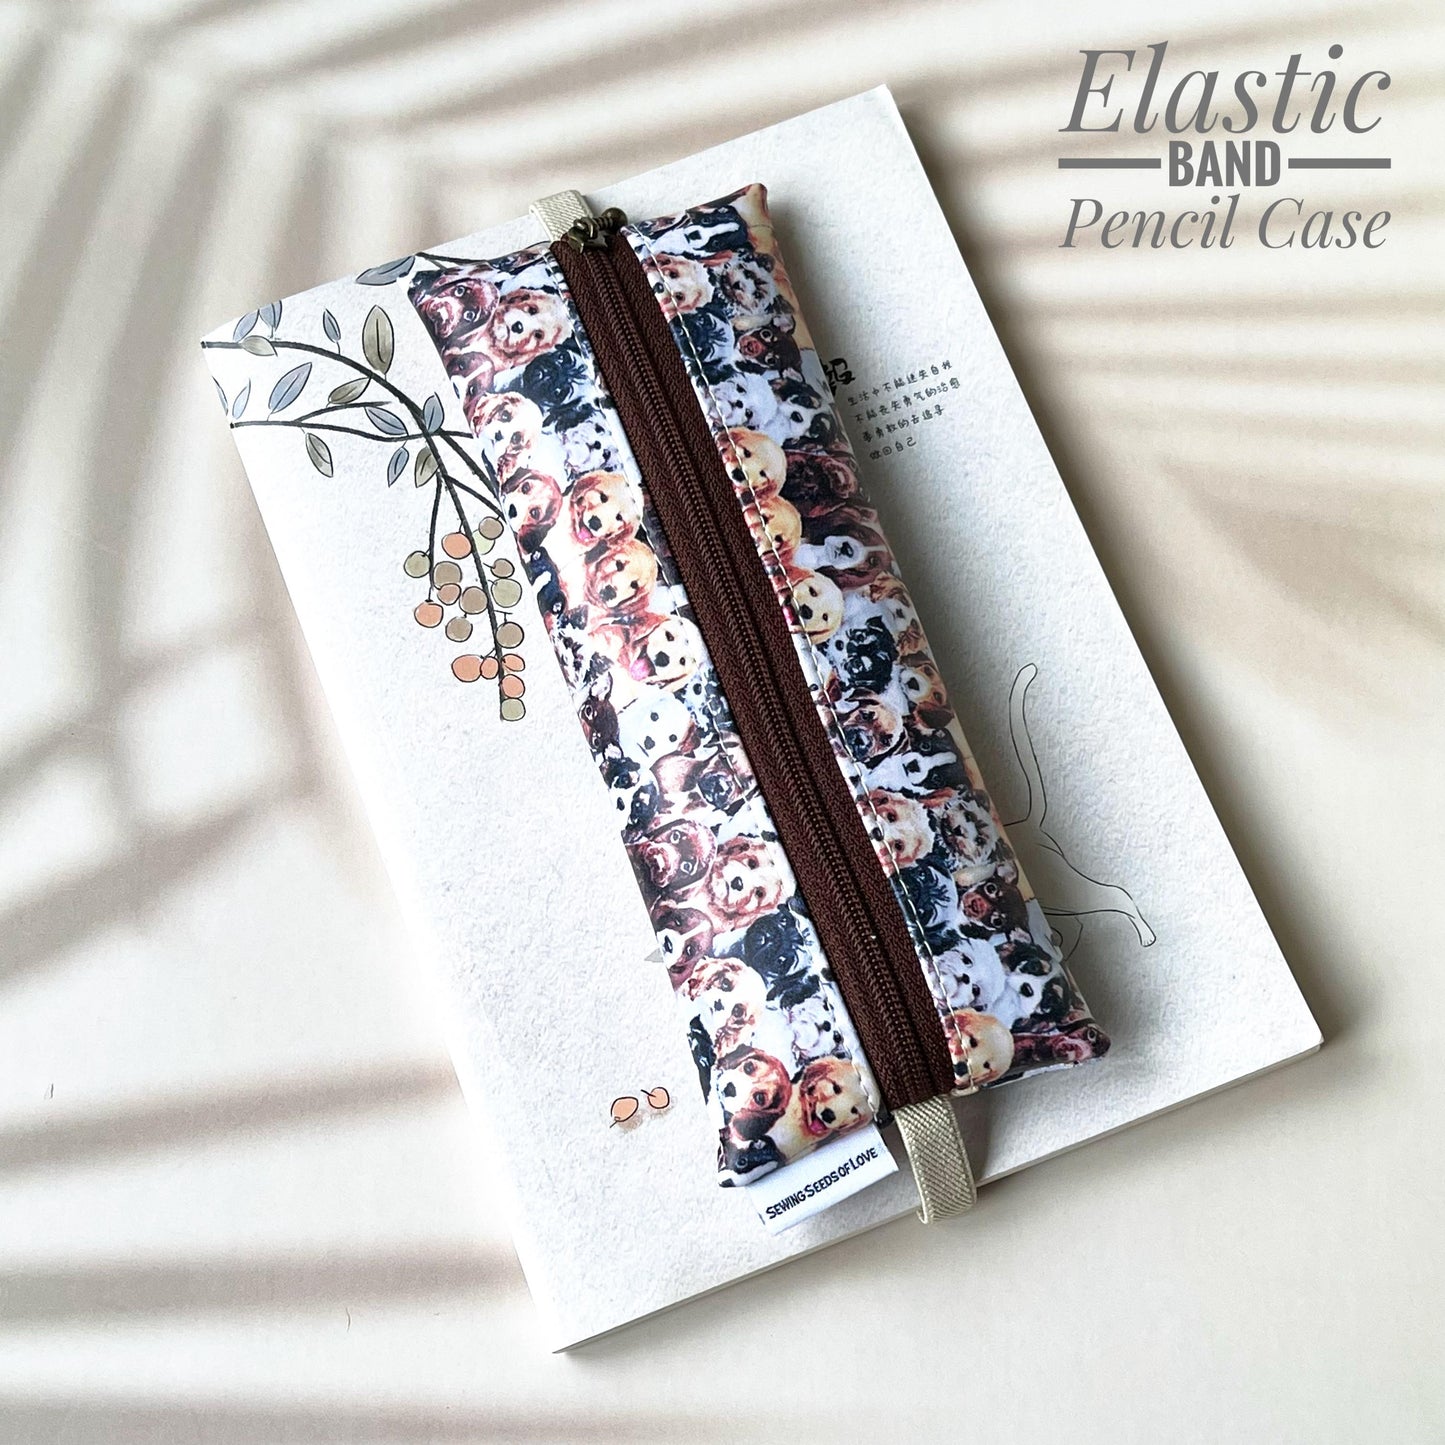 Elastic Band Pencil Case - EBPC15